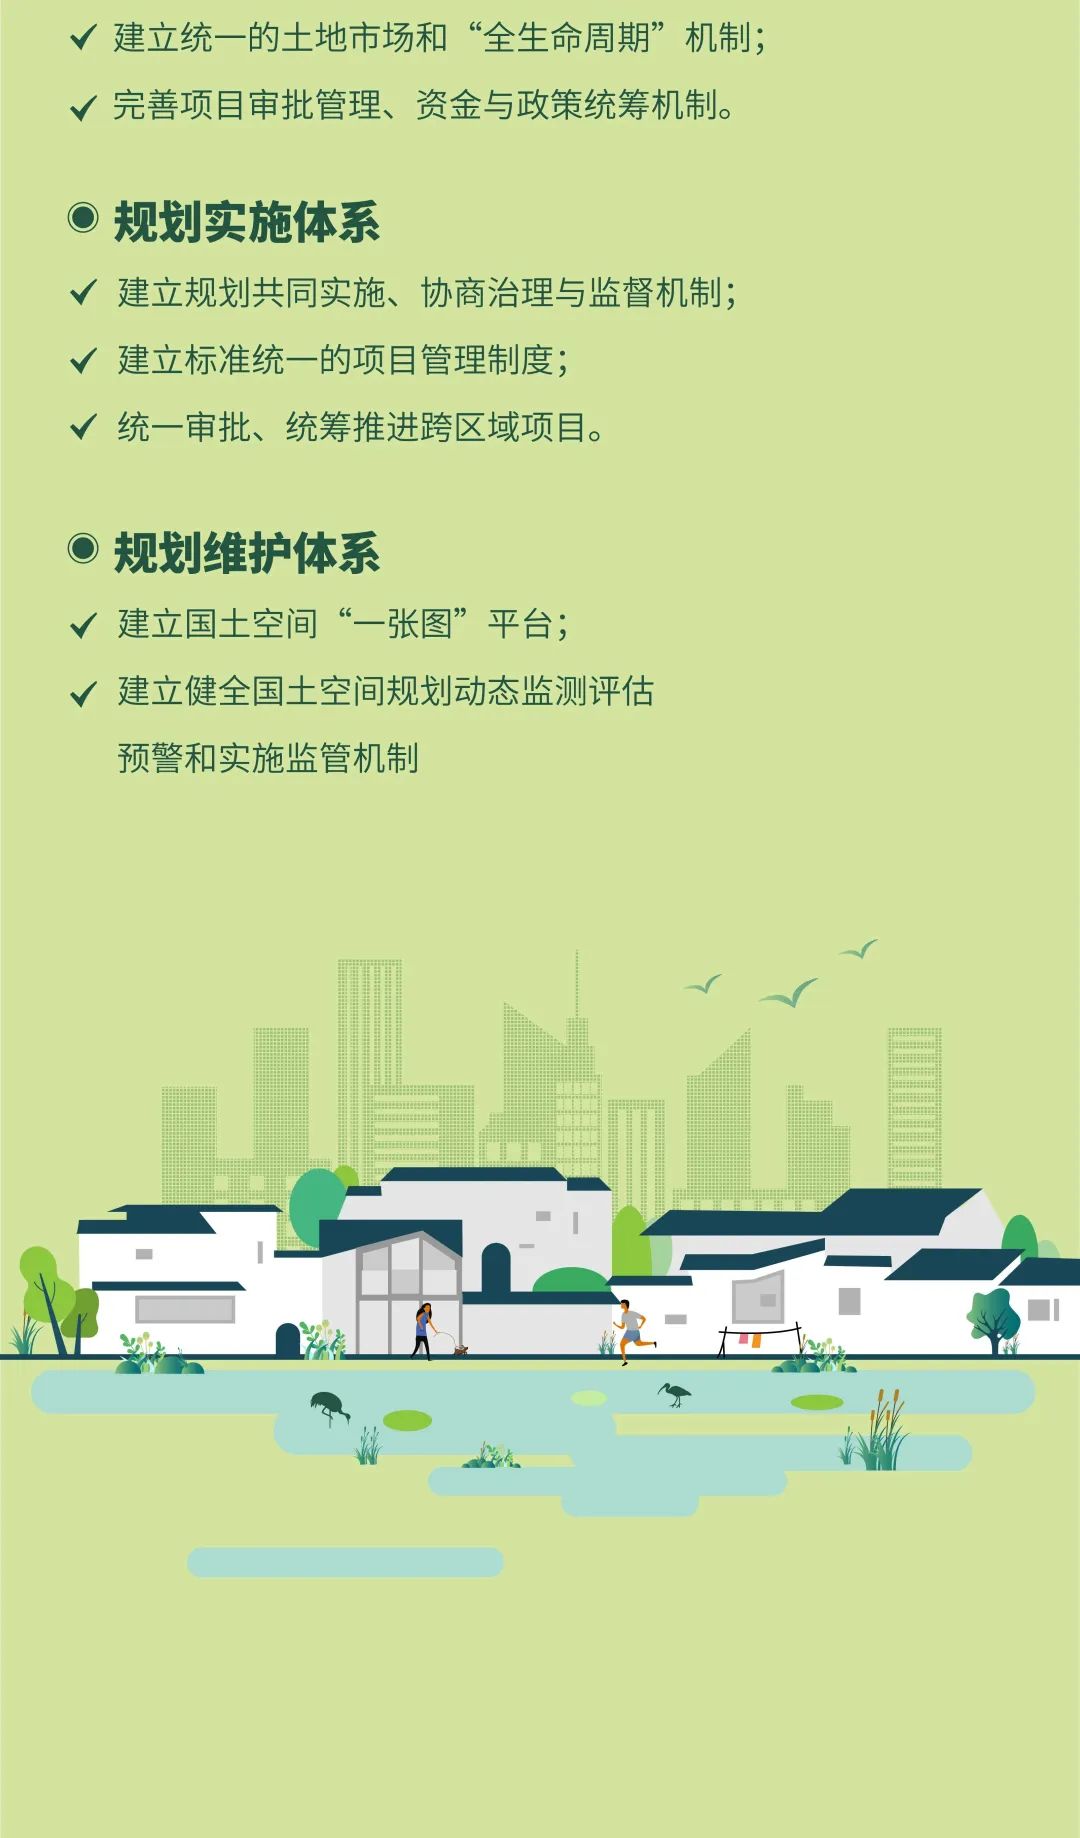 长三角生态绿色一体化发展示范区先行启动区国土空间总体规划(2021-2035 